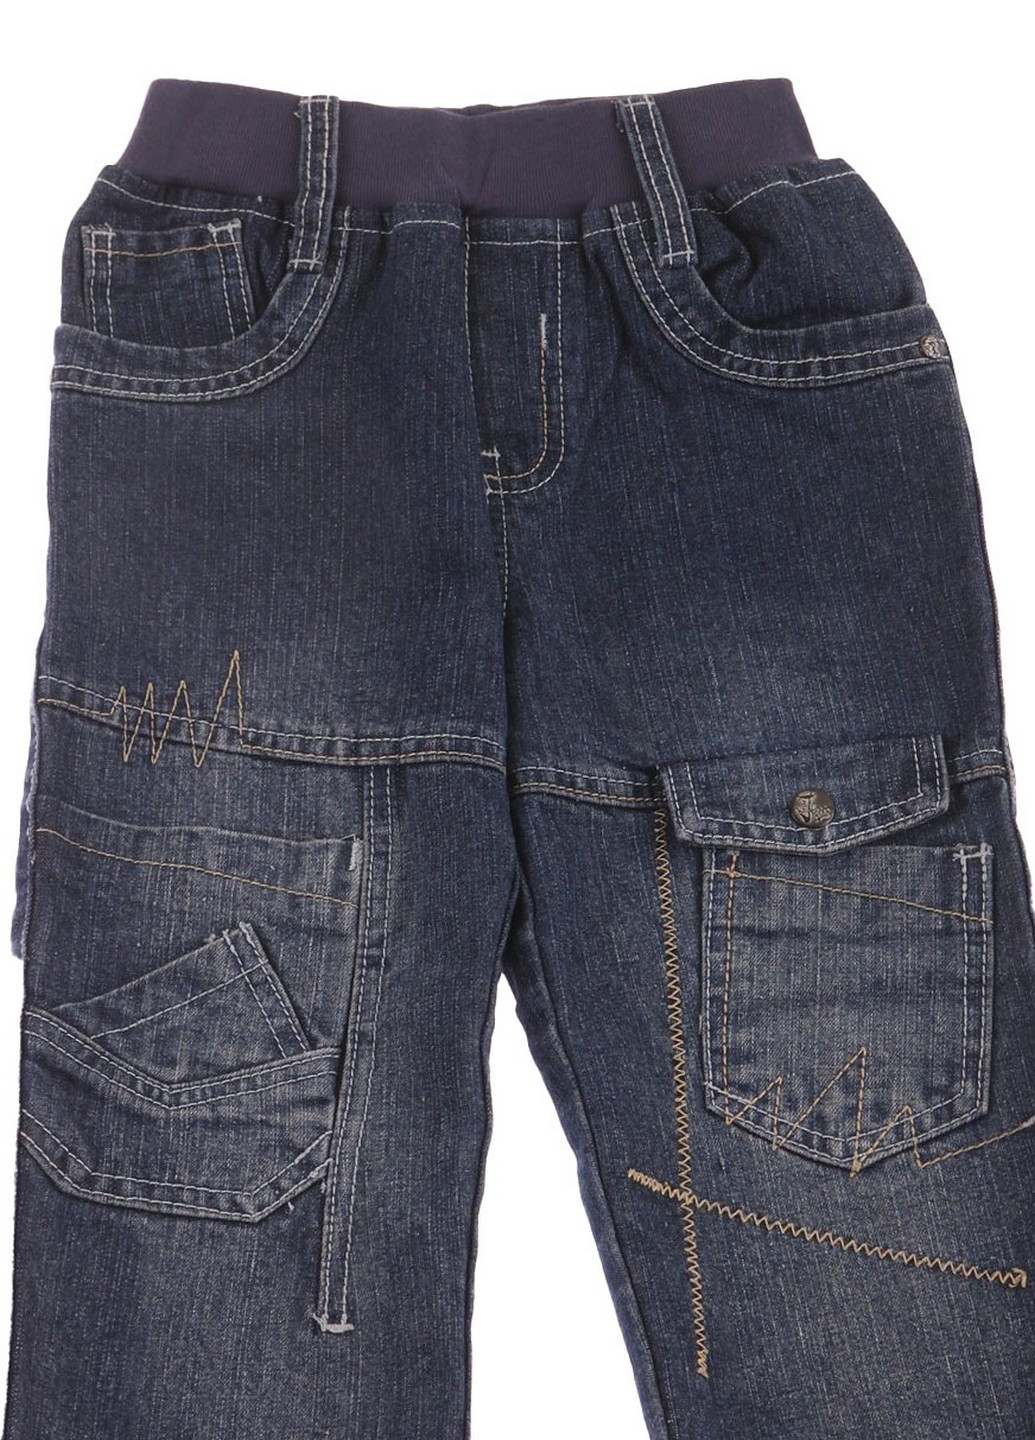 Синие демисезонные джинсы Thomas Boy